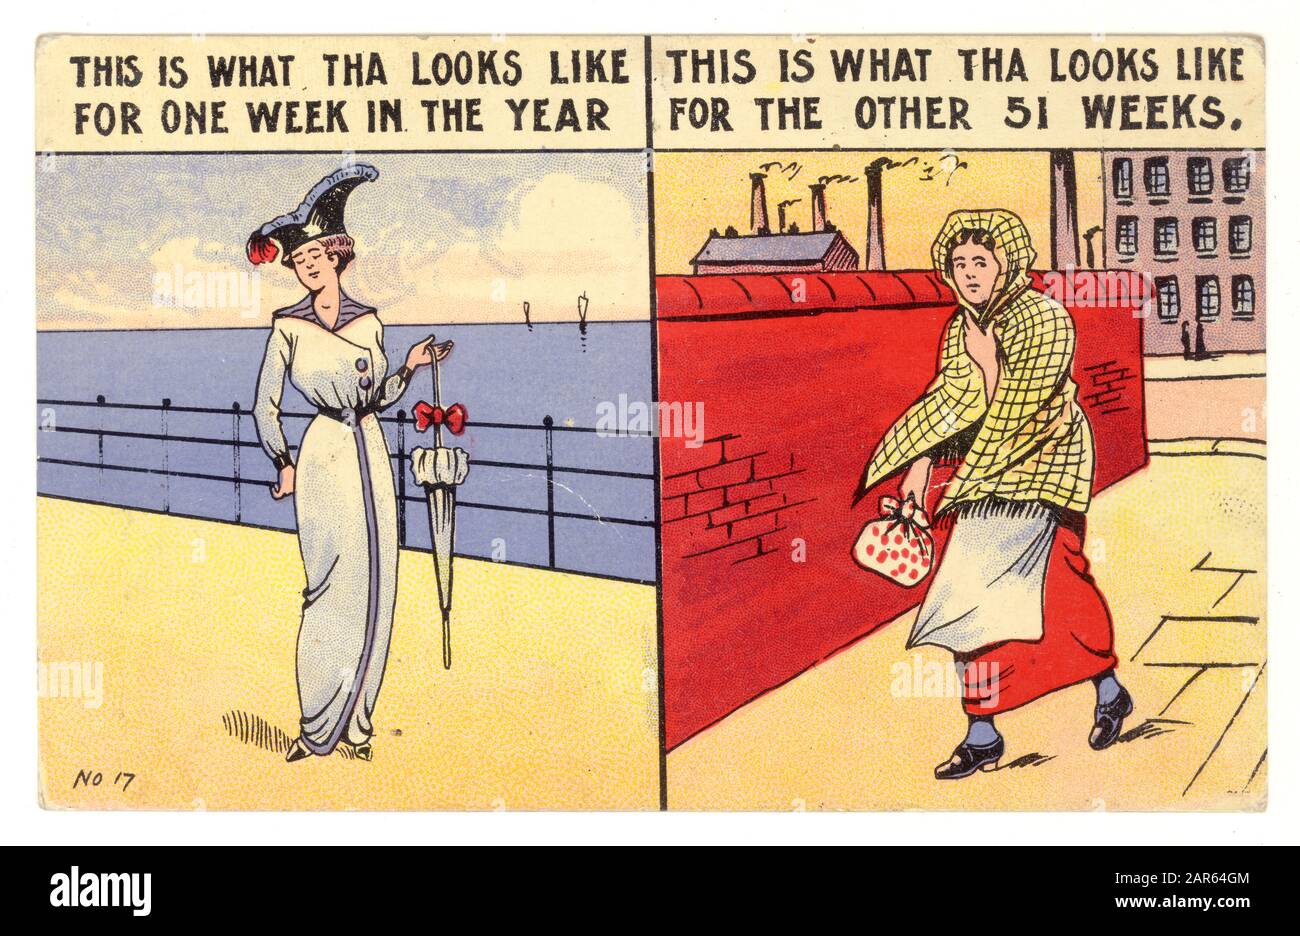 Anfang des 1900er-Jahre-Comics der Arbeiter, die einen modischen "Hobble"-Rock in einem Bild und eine schlechte Arbeitskleidung in einem anderen tragen, was das Beste aus ihrem Jahresurlaub macht oder Die Woche, wie sie bekannt war, weckt, bevor sie zurück zum grimmigen täglichen Grind des Arbeitsplatzes Lancashire, England geht, Großbritannien Um das Jahr 1911. Stockfoto